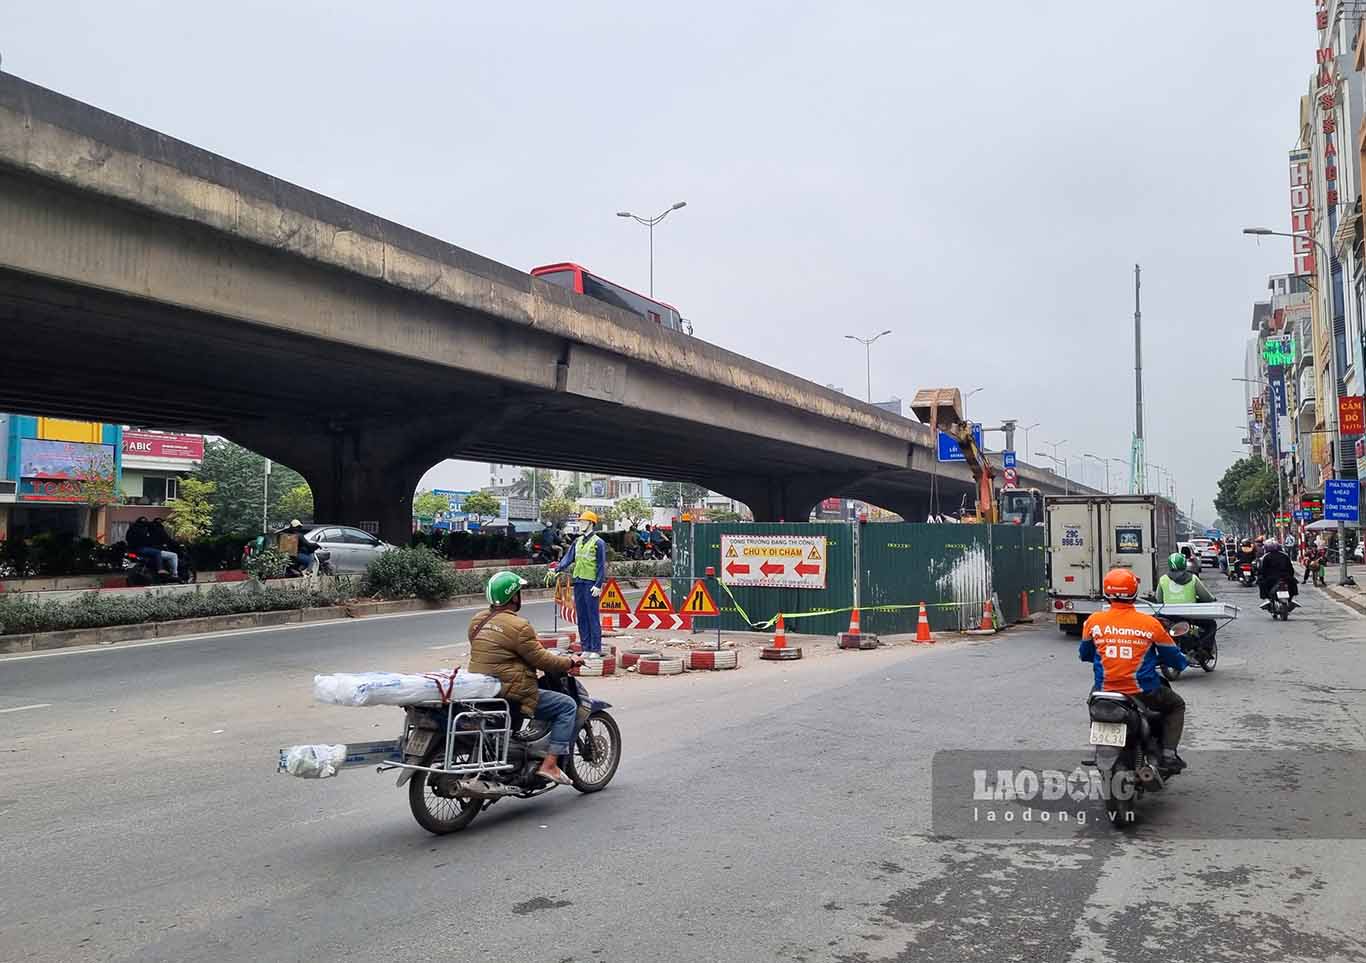 Hiện khu vực đường Nguyễn Trãi, Nguyễn Xiển mới chỉ có lô cốt tại nút giao được dỡ bỏ, các vị trí khác vẫn đang được giữ nguyên mặc dù đã hết thời hạn thi công theo giấy phép.